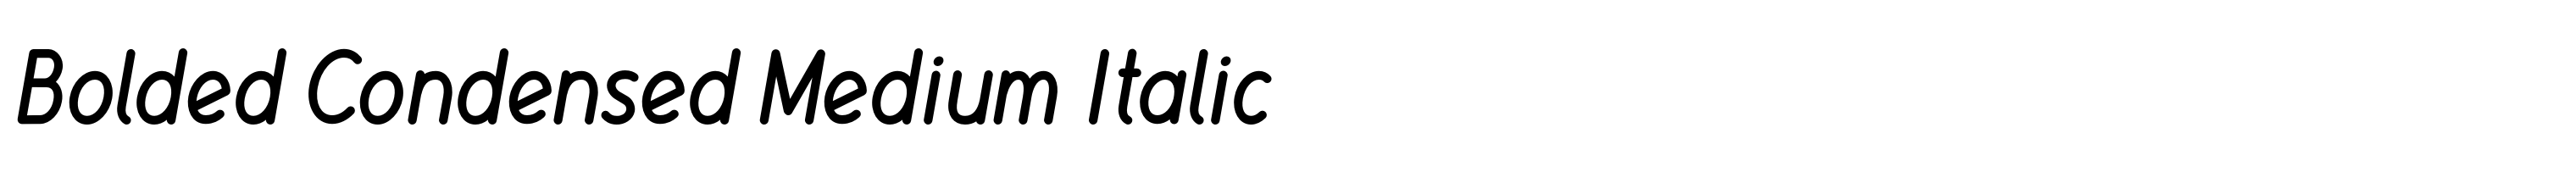 Bolded Condensed Medium Italic